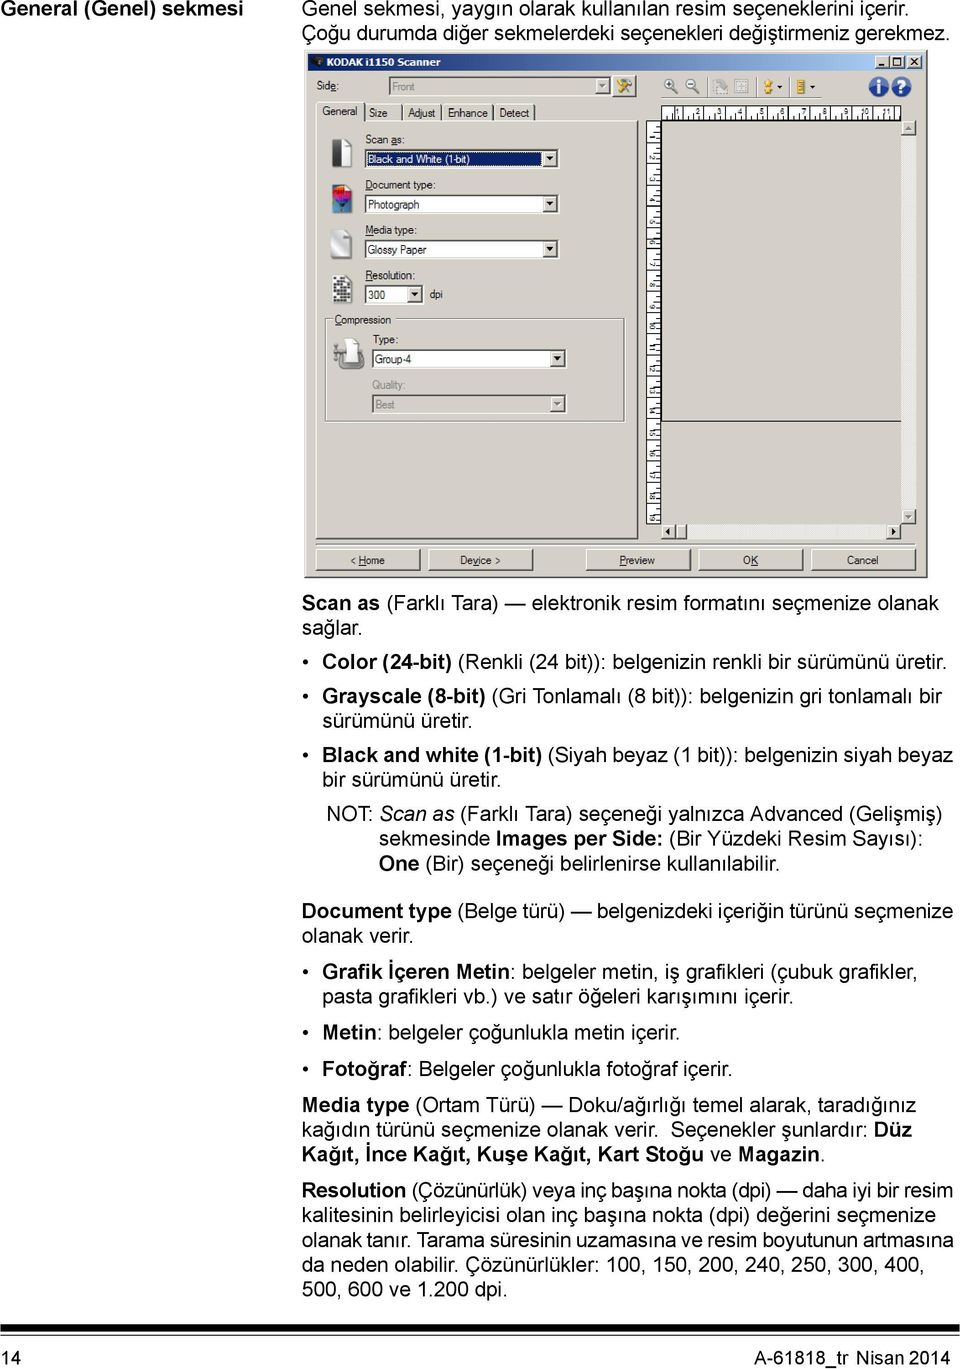 Grayscale (8-bit) (Gri Tonlamalı (8 bit)): belgenizin gri tonlamalı bir sürümünü üretir. Black and white (1-bit) (Siyah beyaz (1 bit)): belgenizin siyah beyaz bir sürümünü üretir.